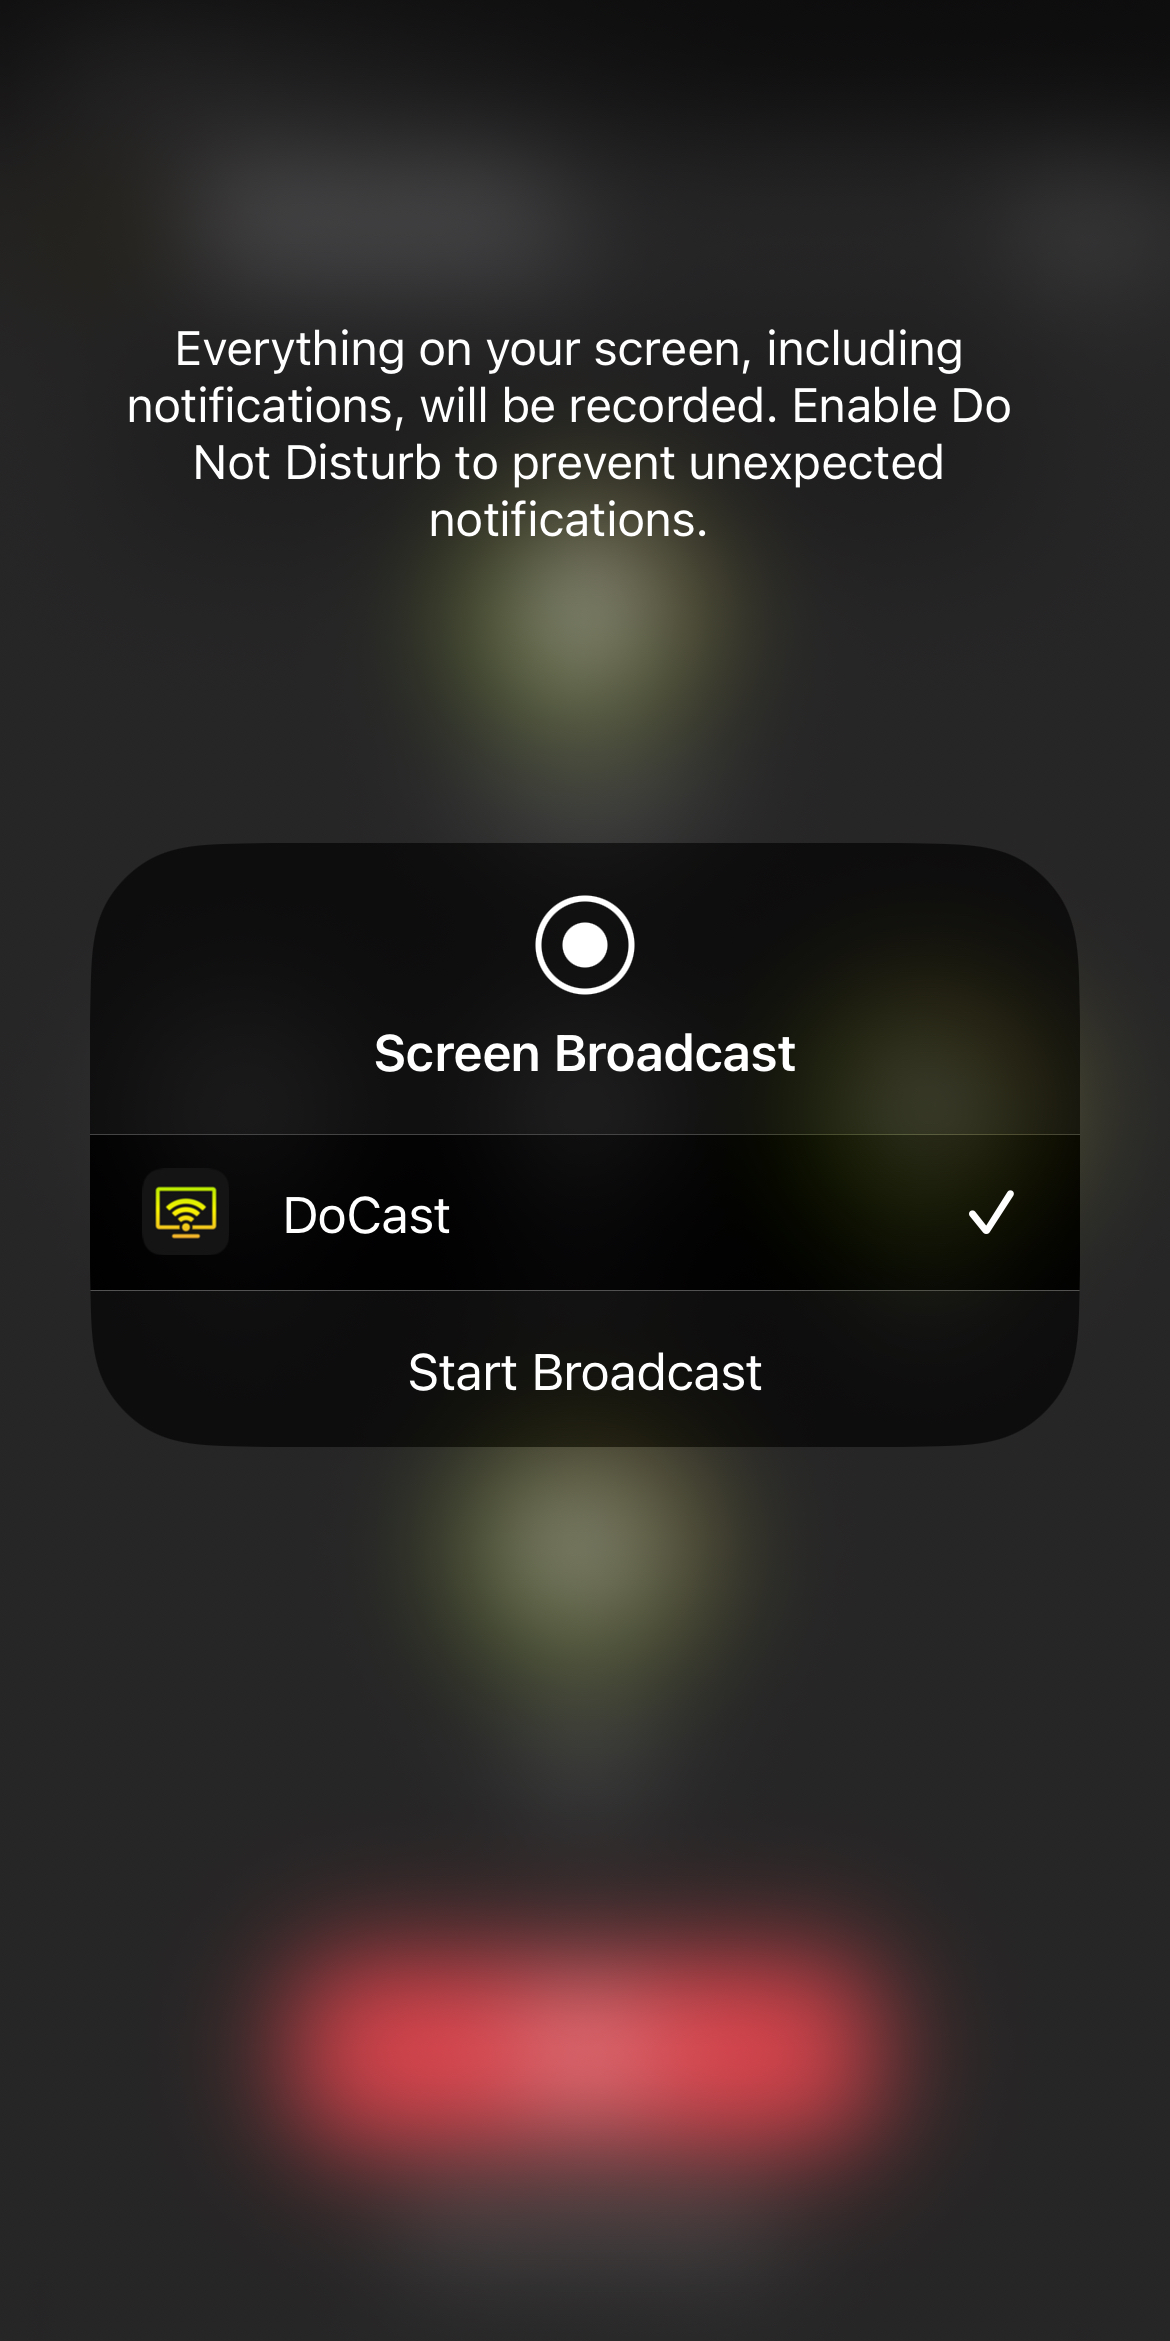 Broadcasting iPhone to Chromecast TV via DoCast